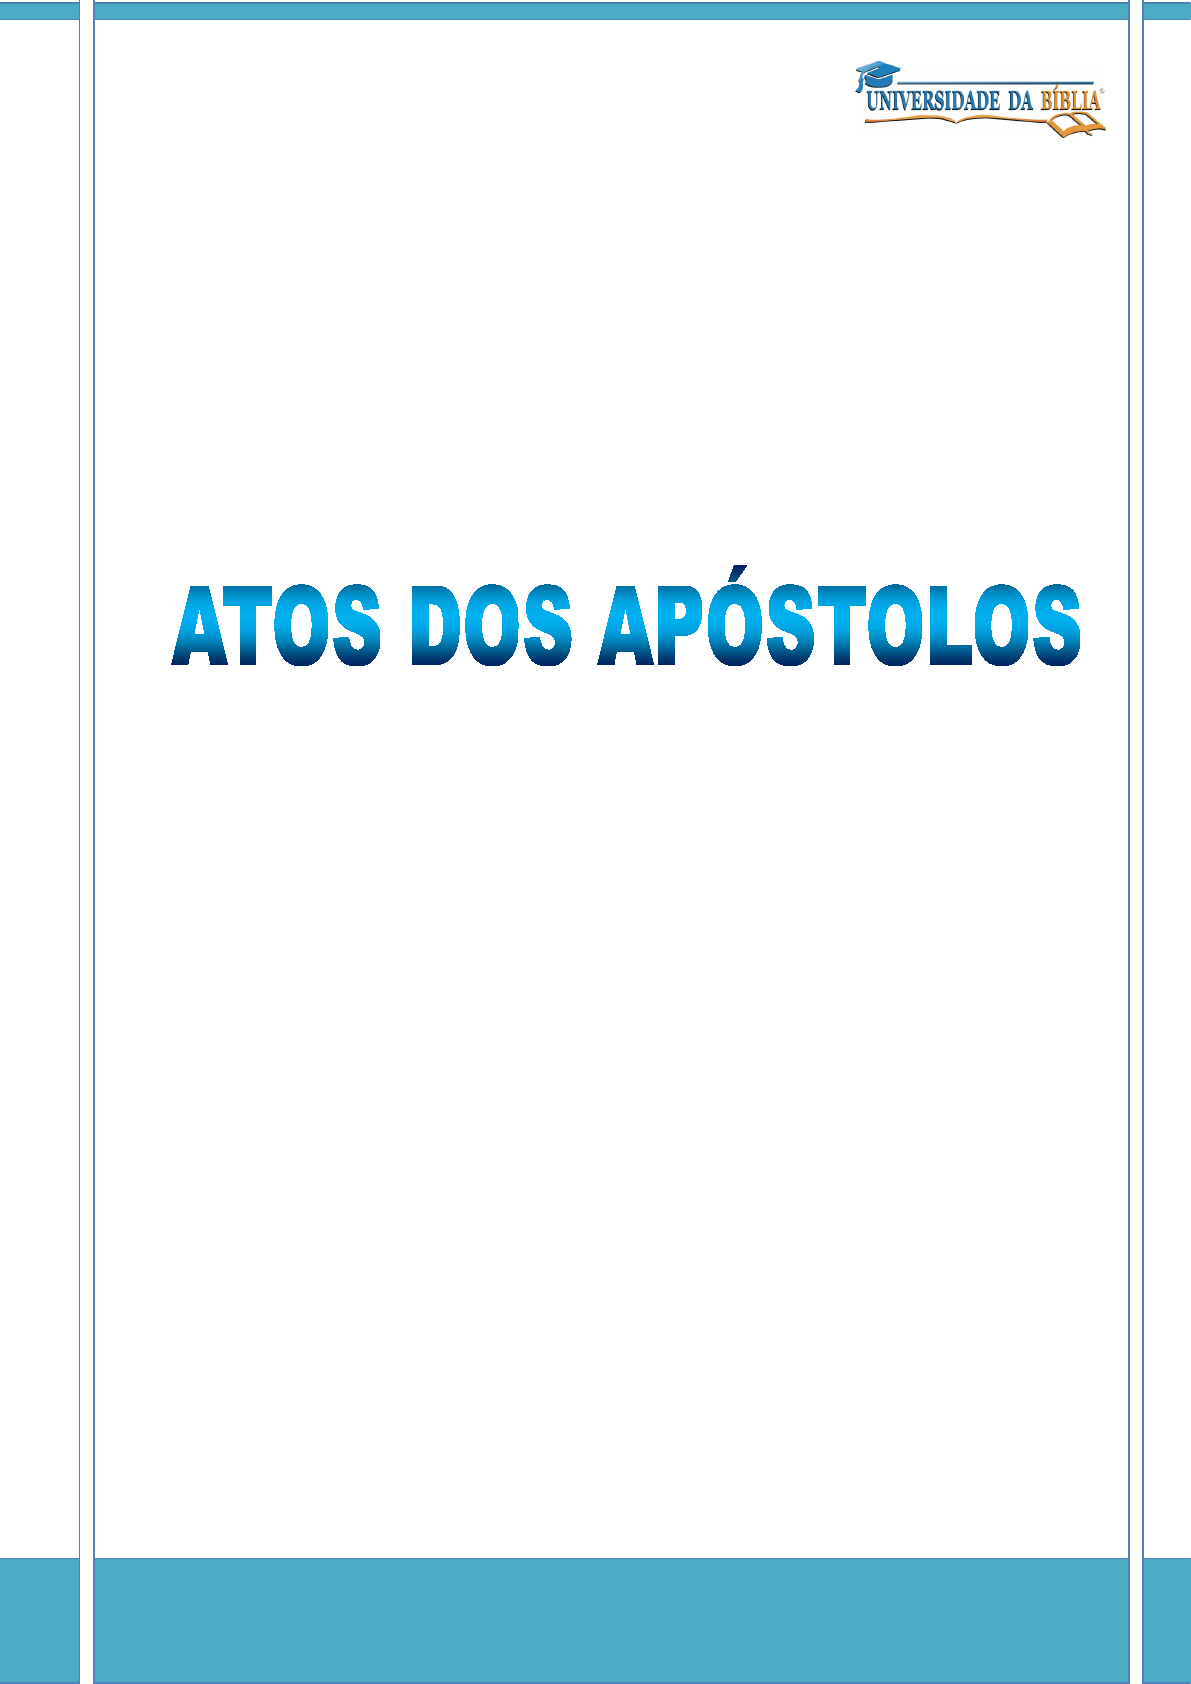 Atos dos Apóstolos 20:31 - Bíblia